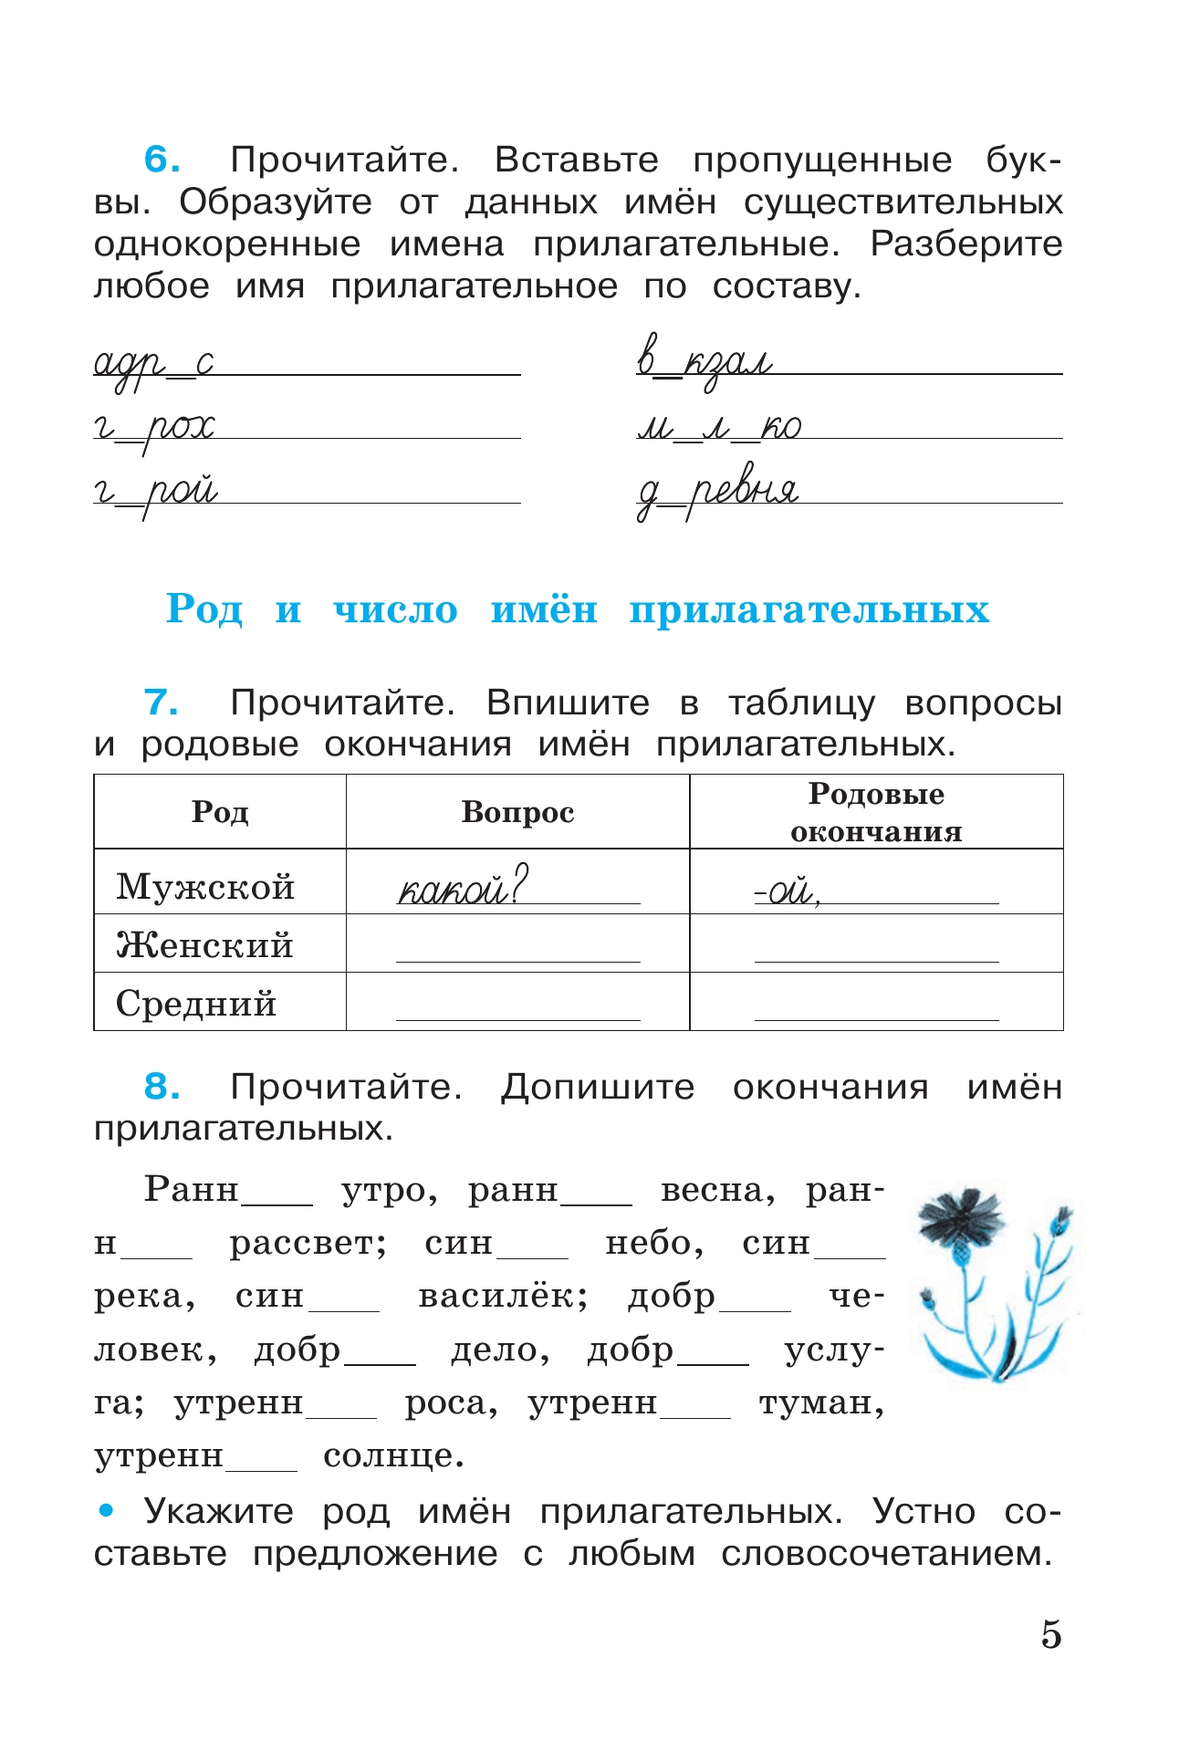 Русский язык. Рабочая тетрадь. 4 класс. В 2 частях. Часть 2 10